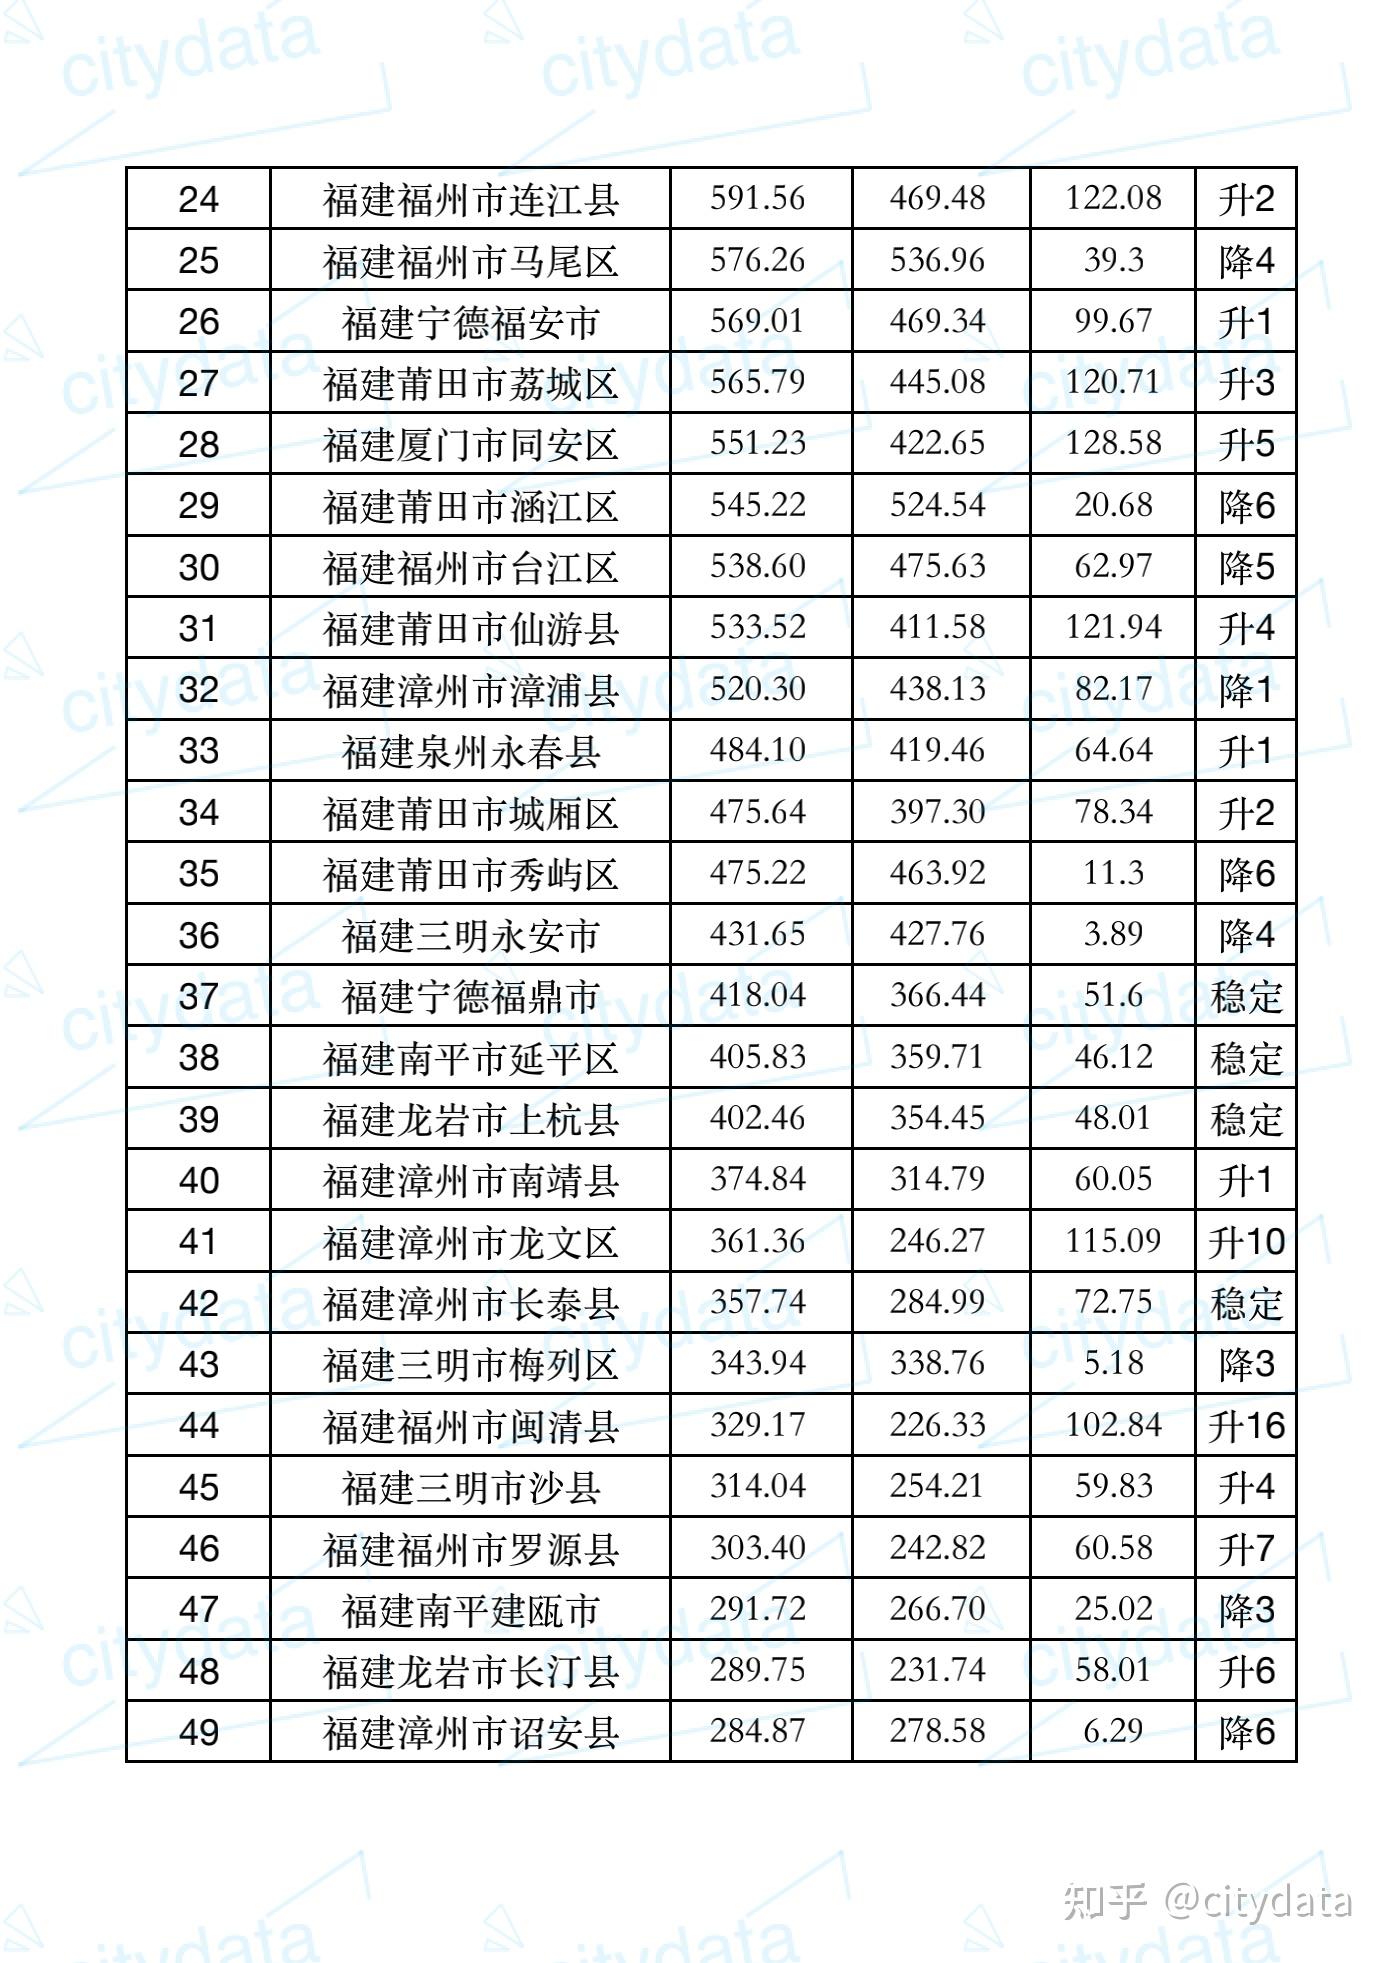 2019年度福建省县市区gdp排名 晋江市超2000亿元居第一